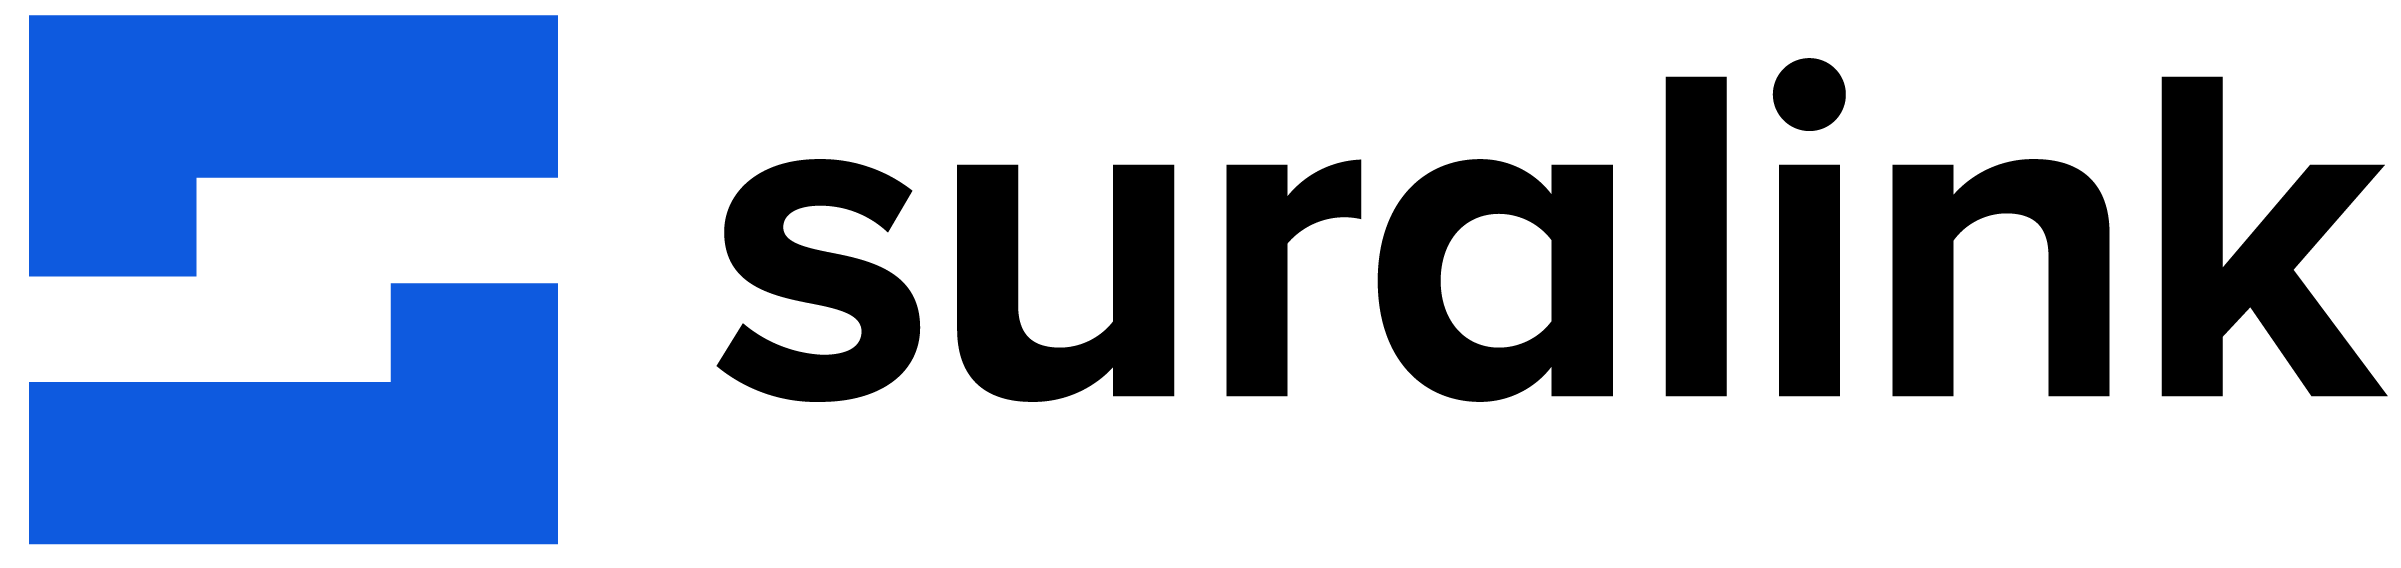 Suralink logo